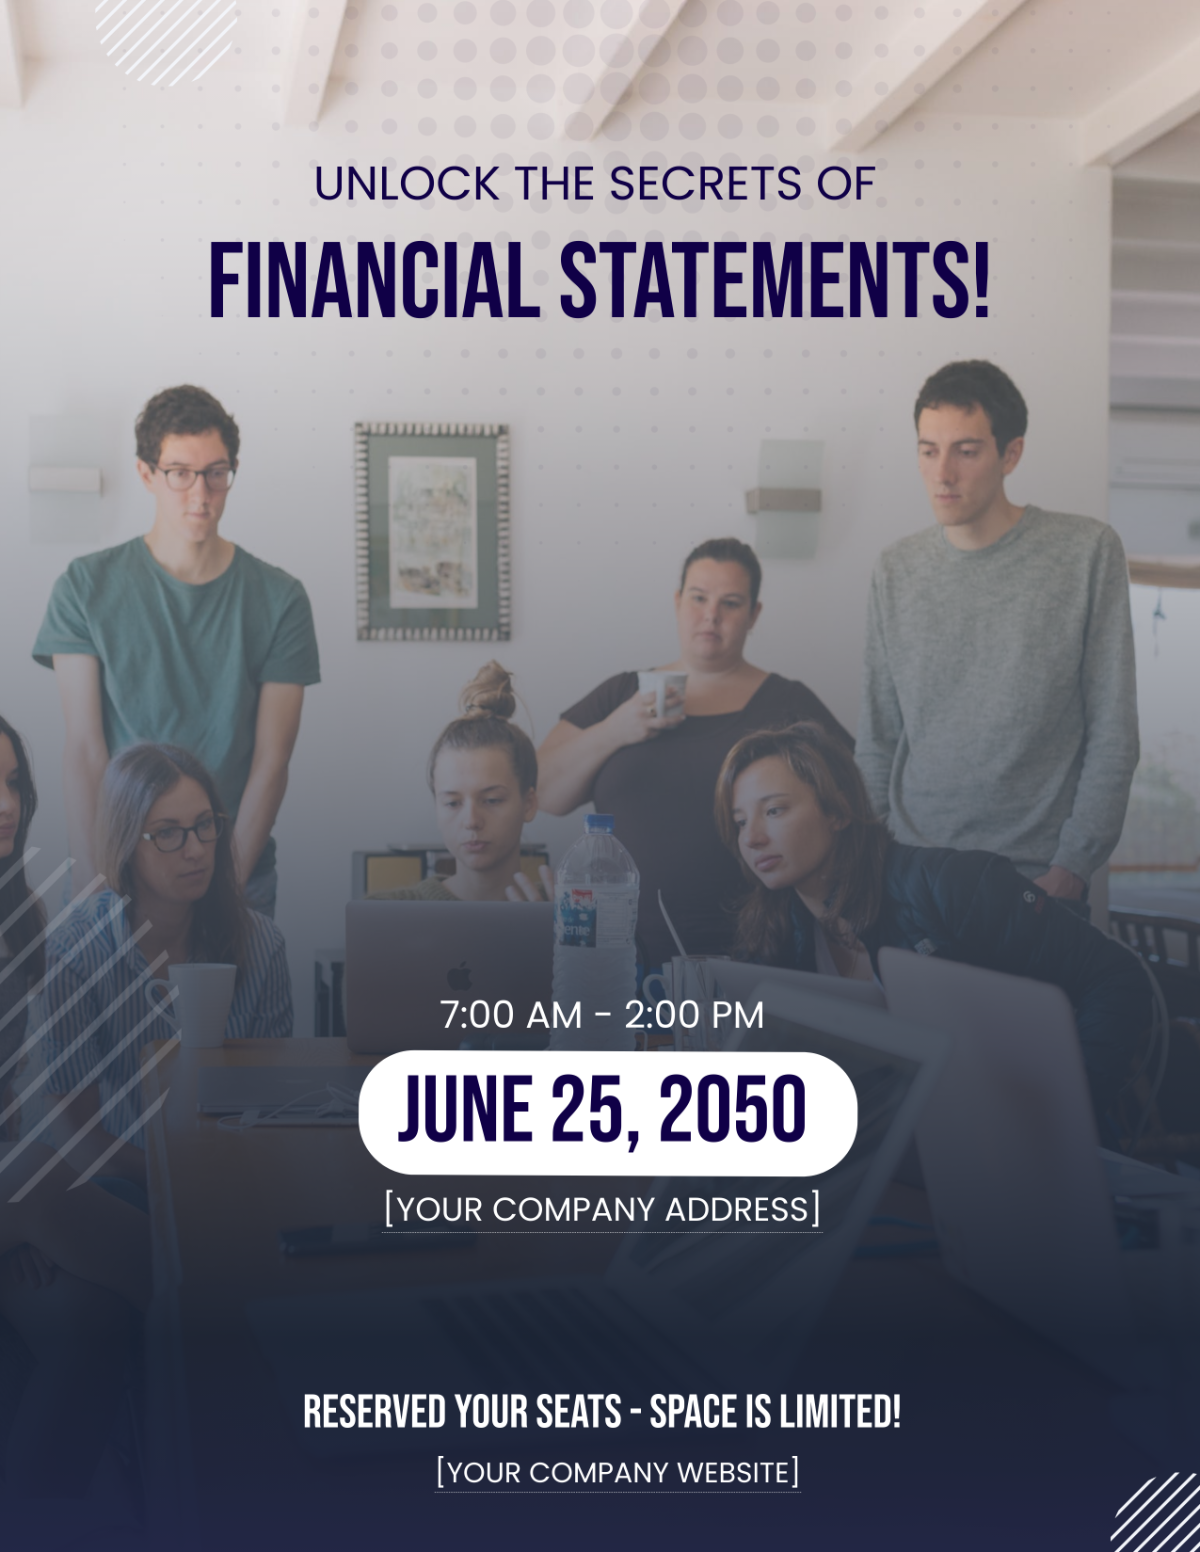 Financial Statement Analysis Workshop Flyer Template